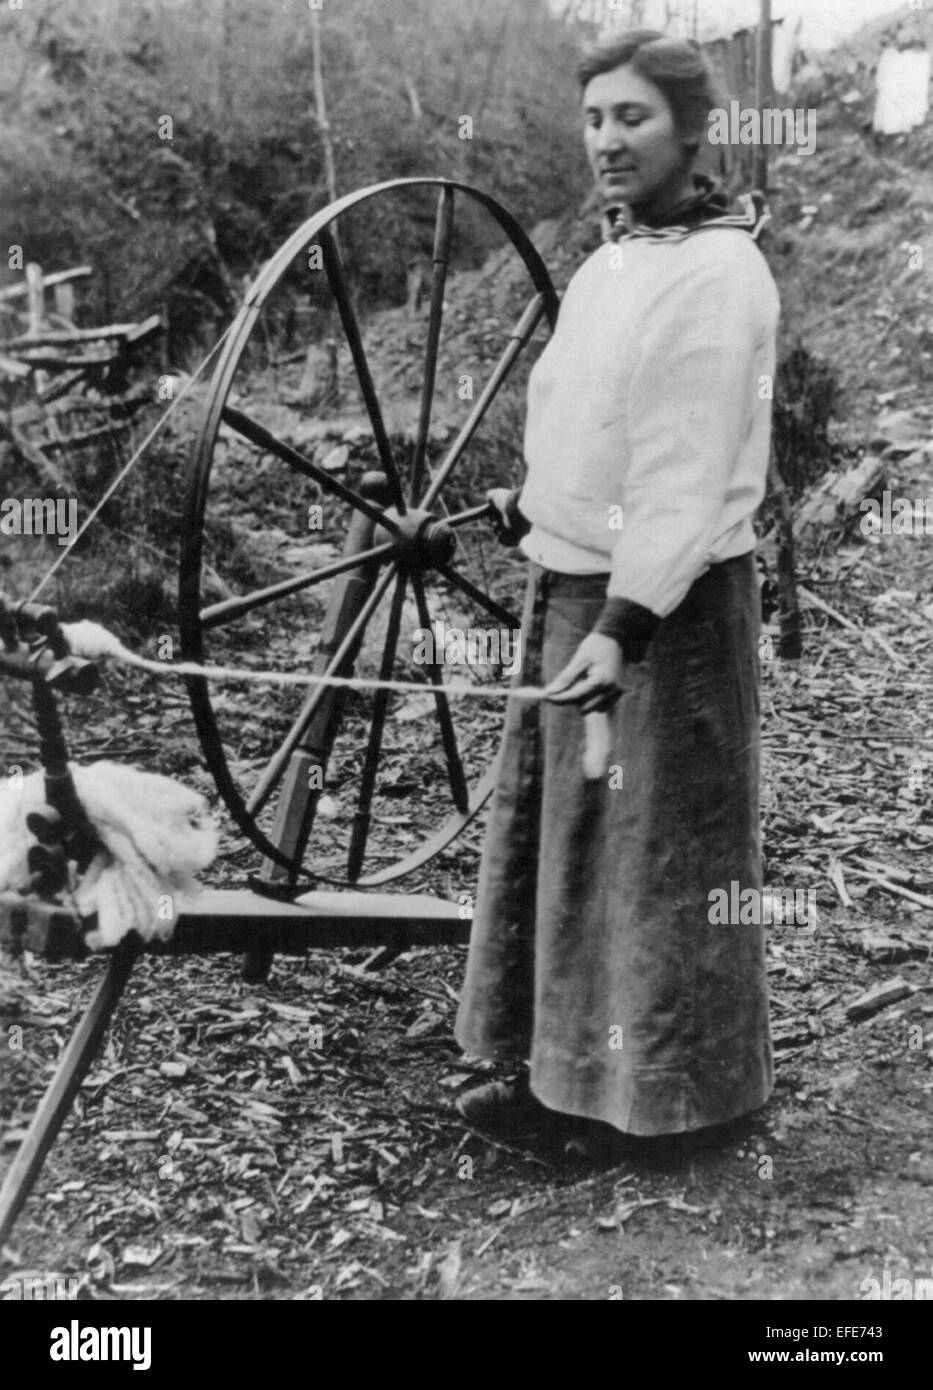 "Großmutters Spinnrad reduziert die hohen Lebenshaltungskosten" Frau stehend, im Freien, mit Spinnrad, ca. 1920 Stockfoto